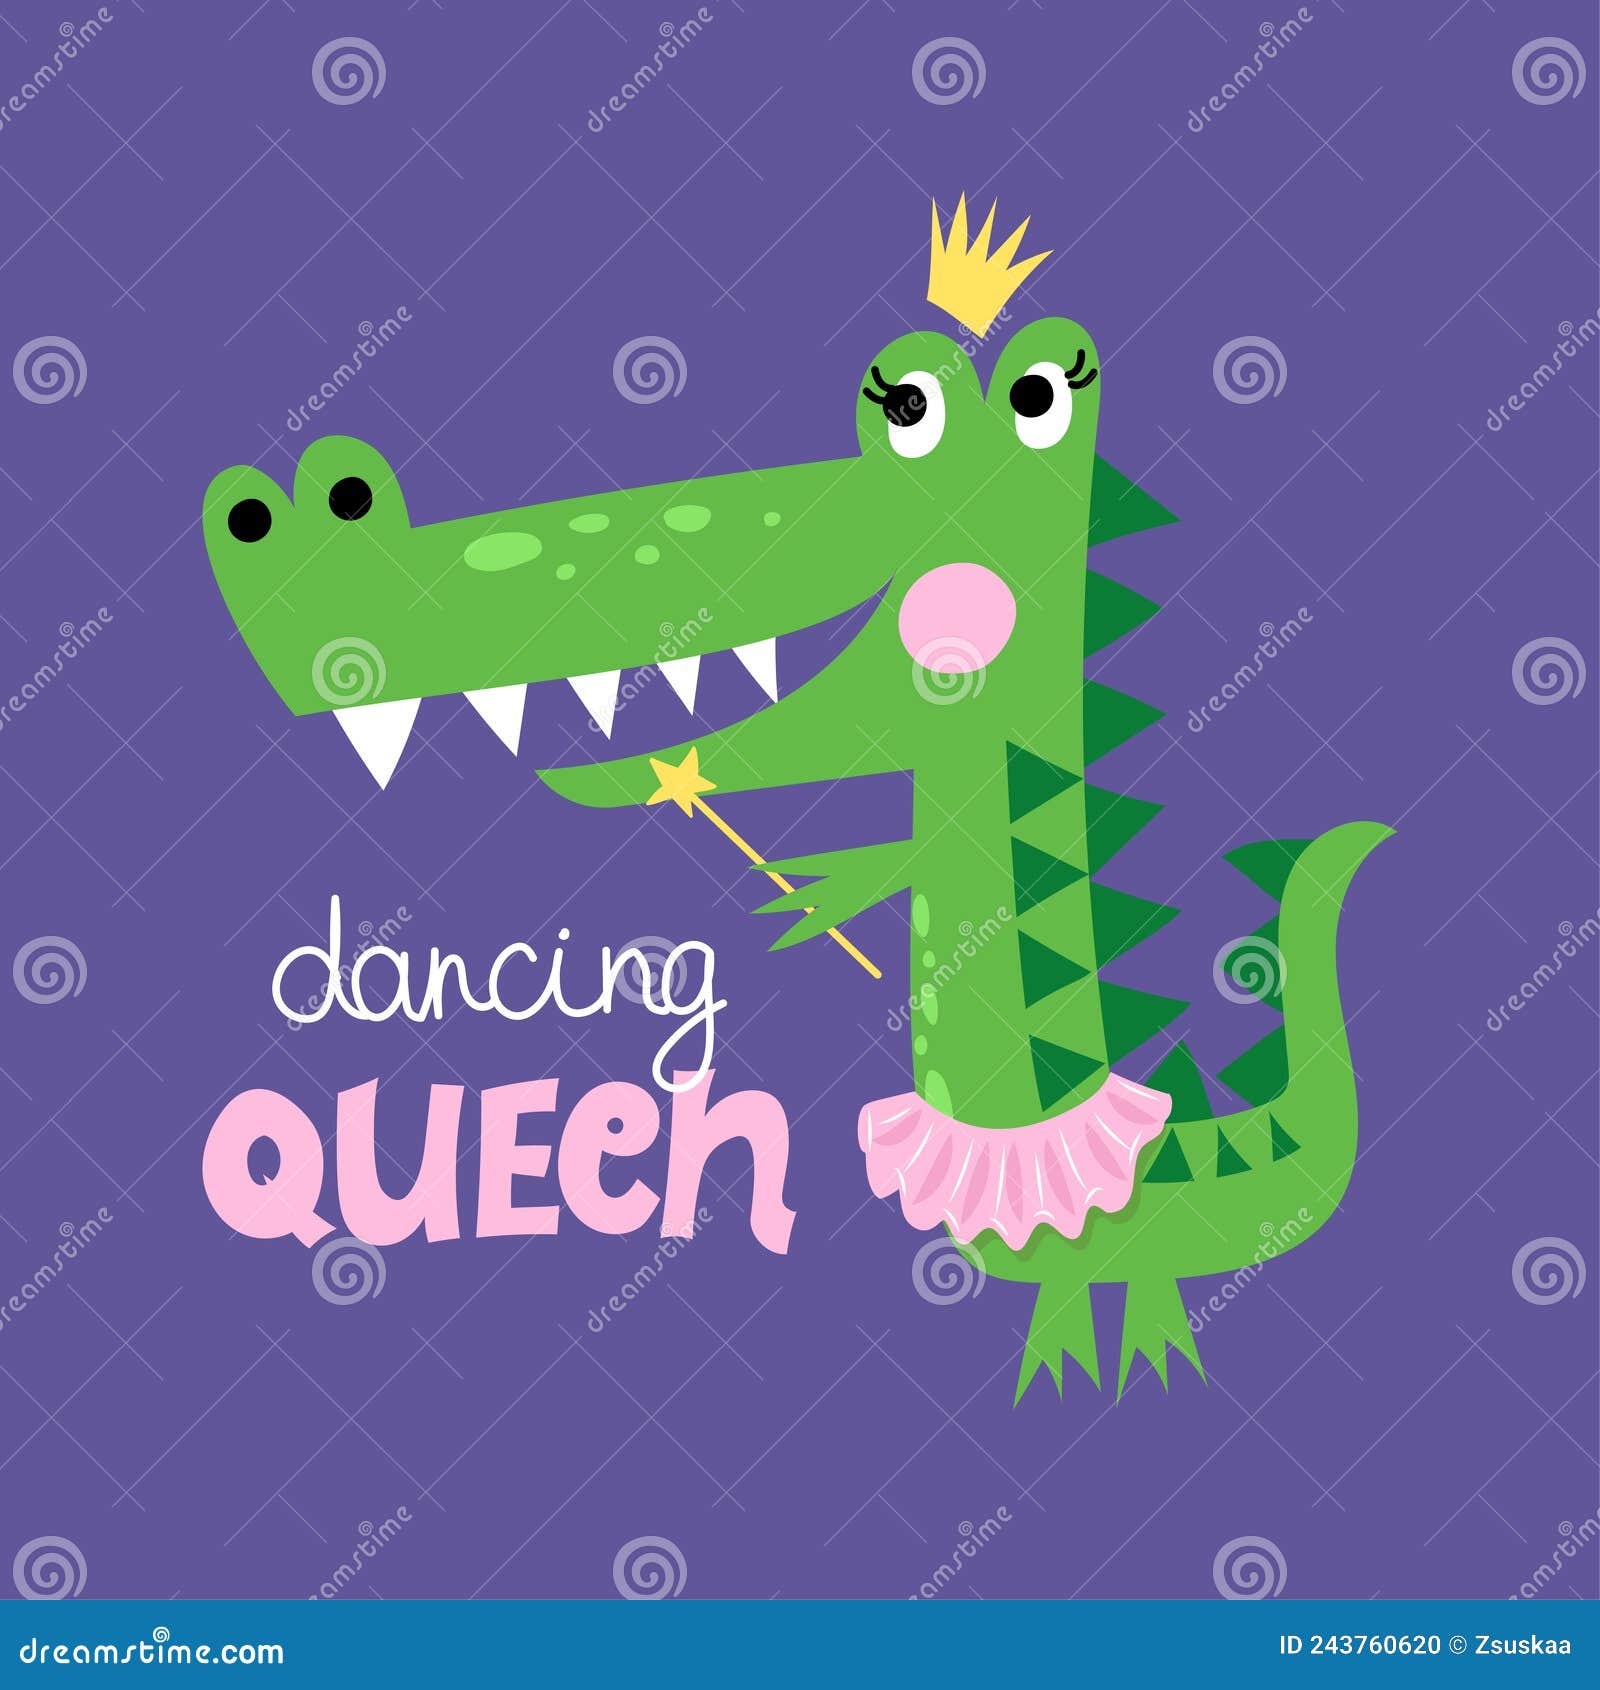 Dancing Queen Dance Dancer Crown Art Board Print for Sale by